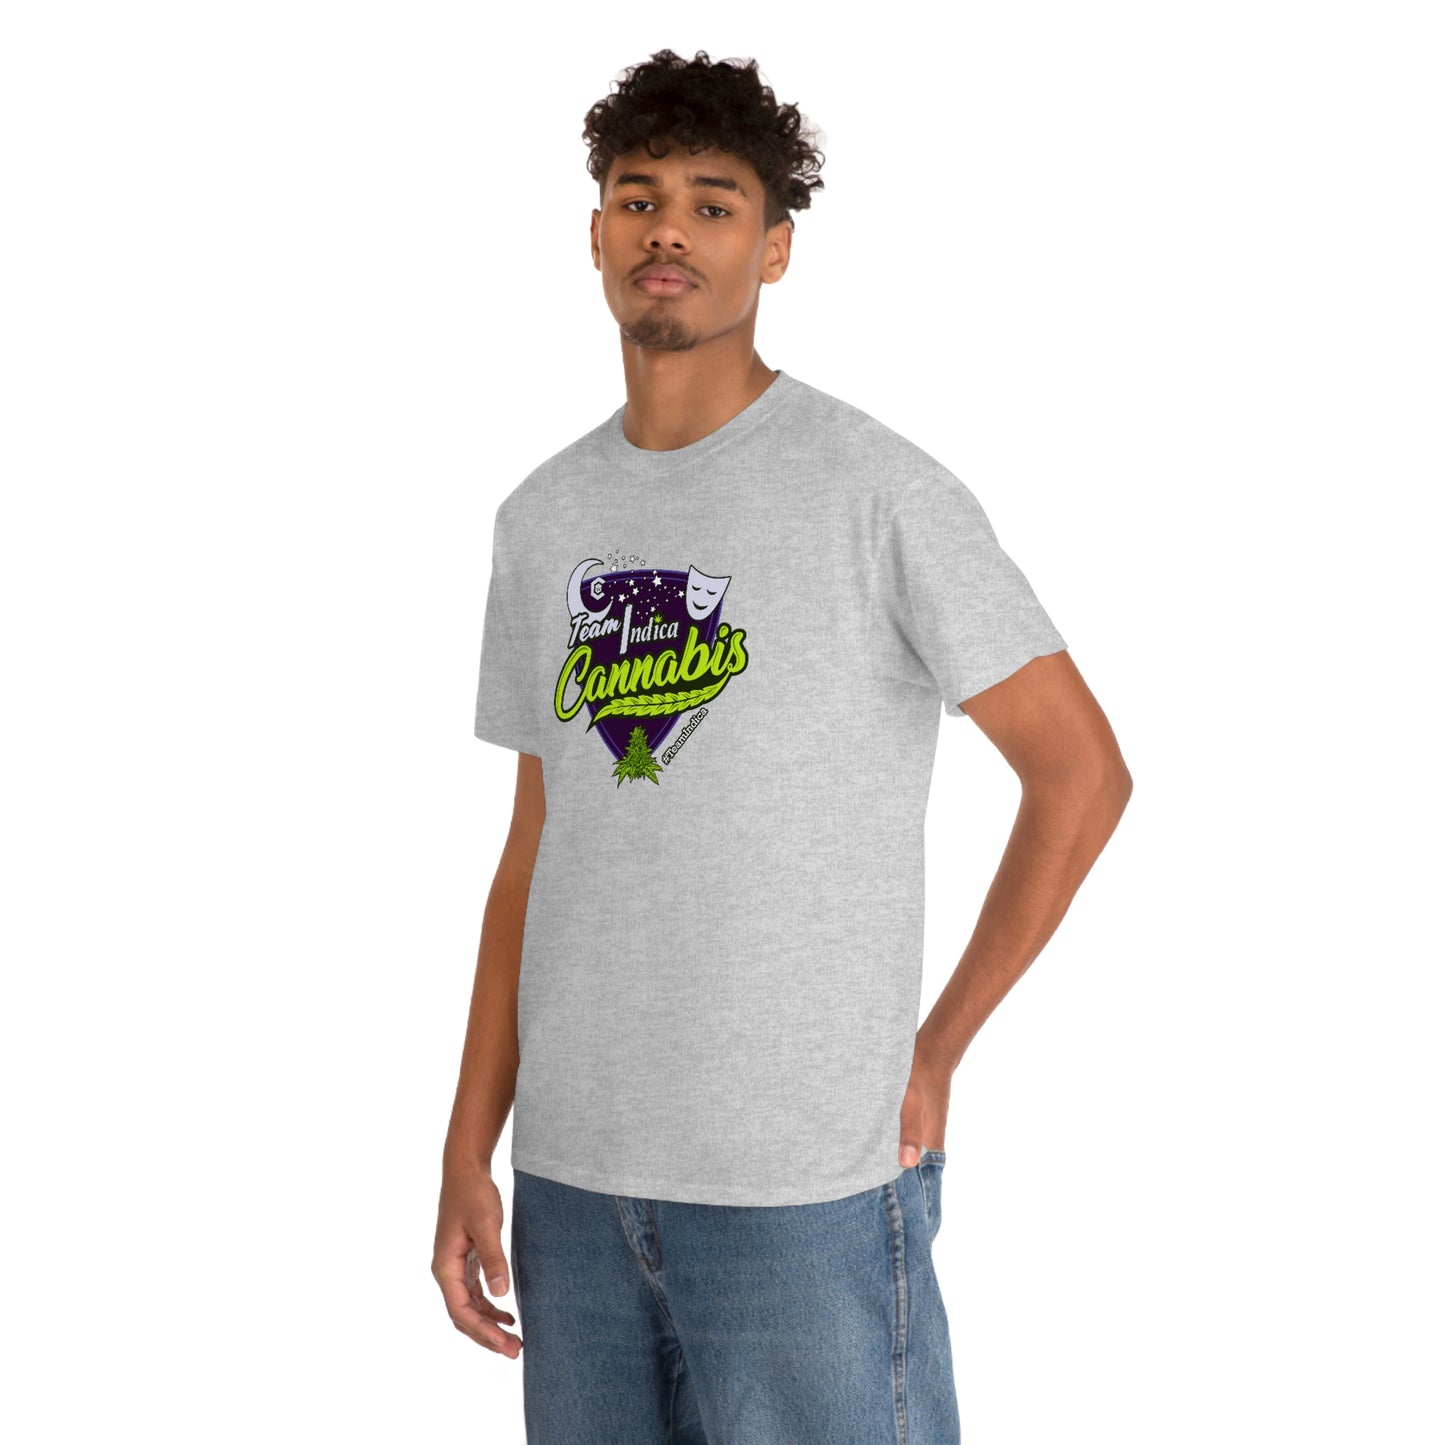 a man wearing a Team Indica Cannabis T-Shirt.